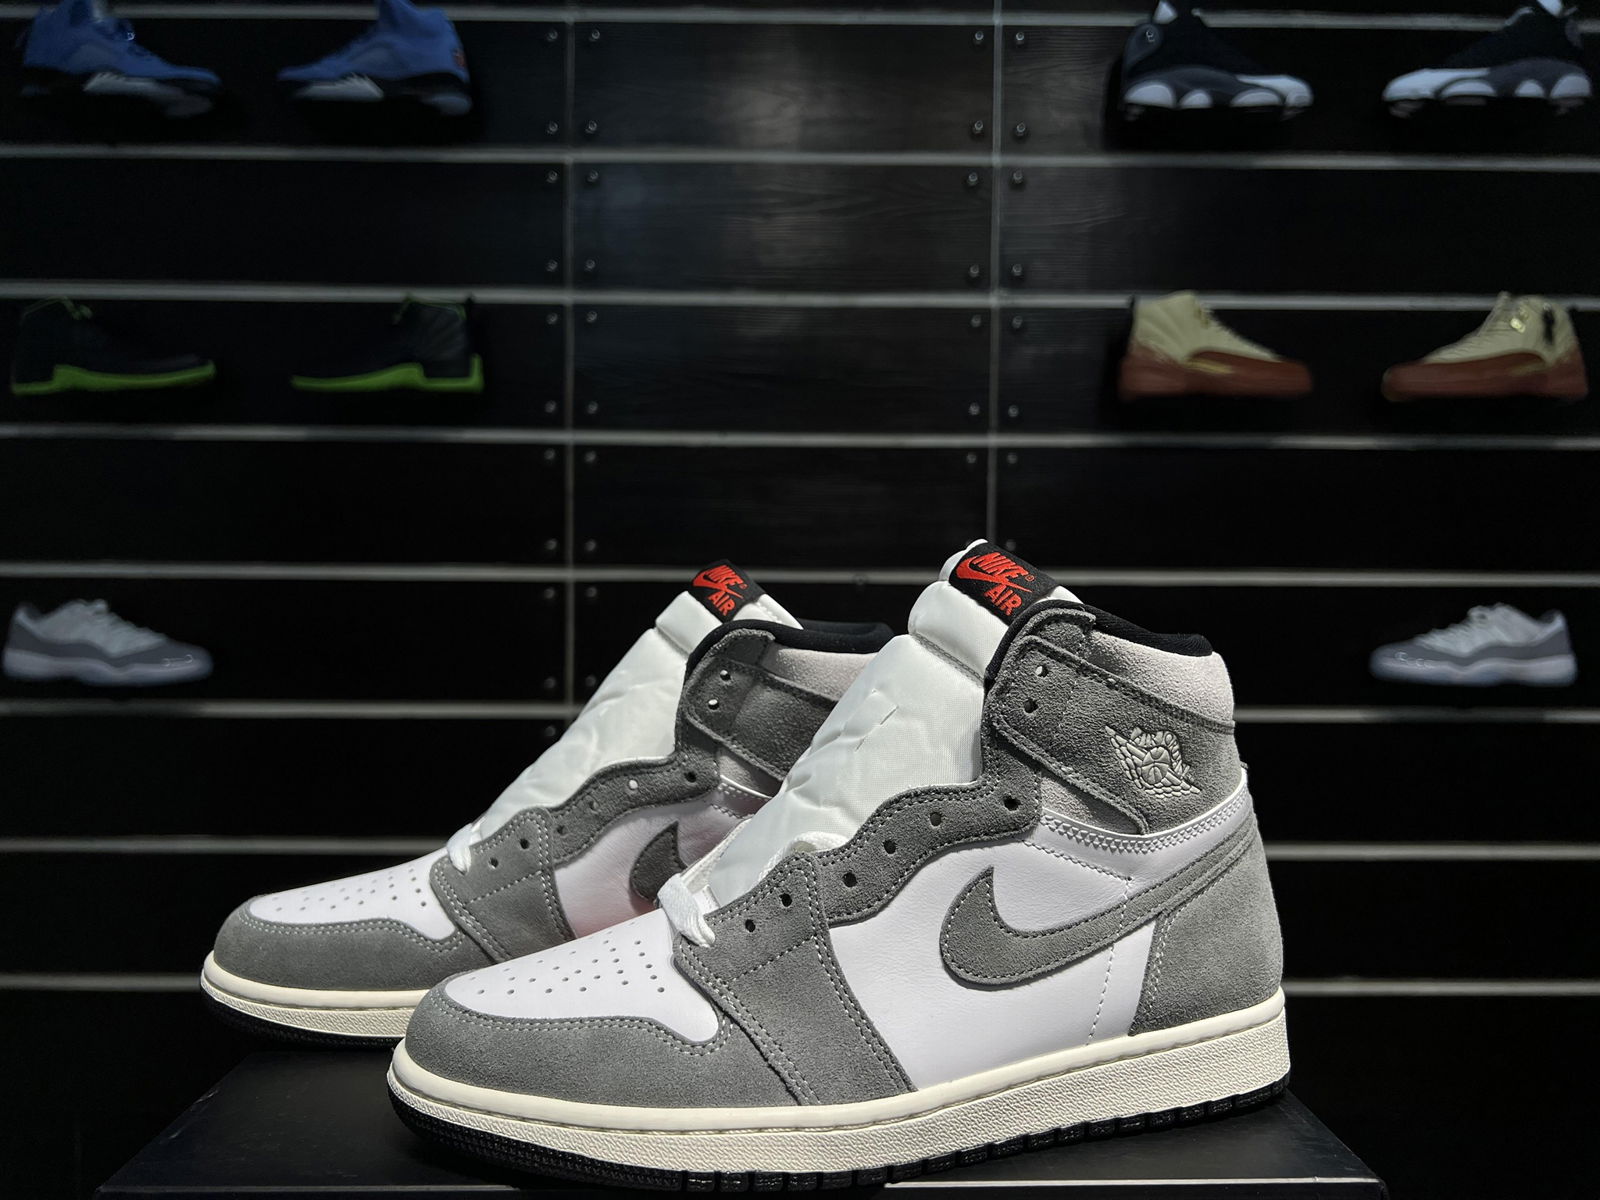 Air Jordan 1 High OG “Washed Heritage High top   basketball shoes DZ5485-051  5